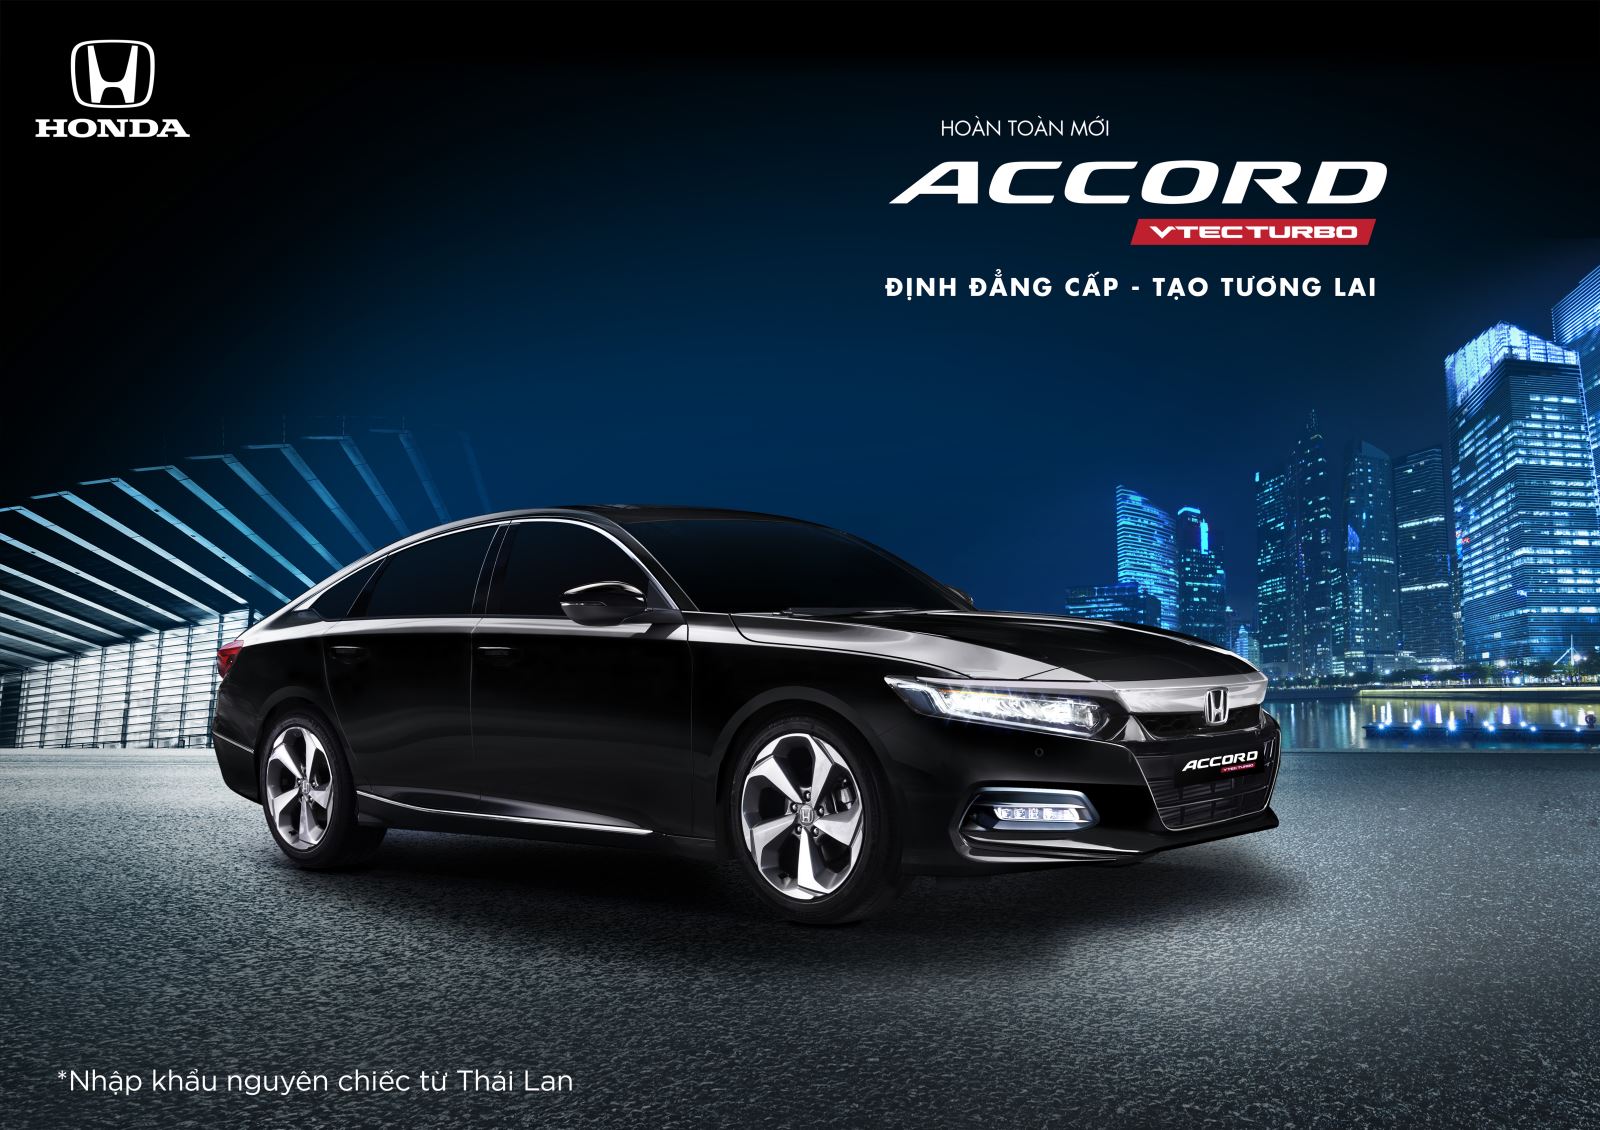 Honda Việt Nam giới thiệu mẫu xe Honda Accord hoàn toàn mới “Định đẳng cấp – Tạo tương lai”